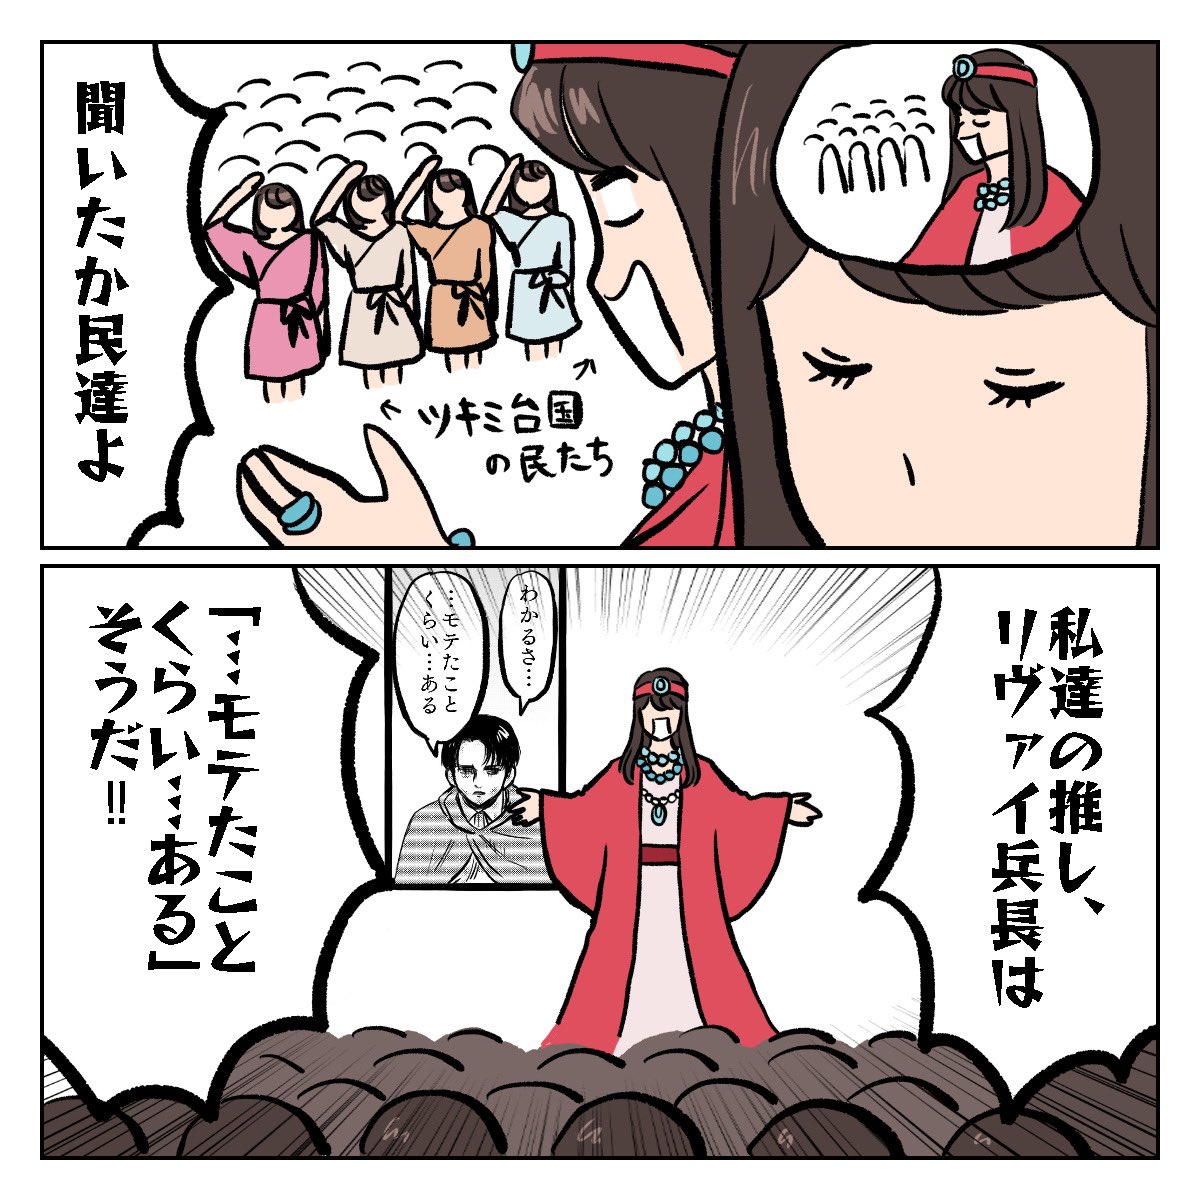 公式からの供給を限界まで広げるオタク(1/2)

#オタ活 #進撃の巨人 #shingeki #漫画が読めるハッシュタグ 